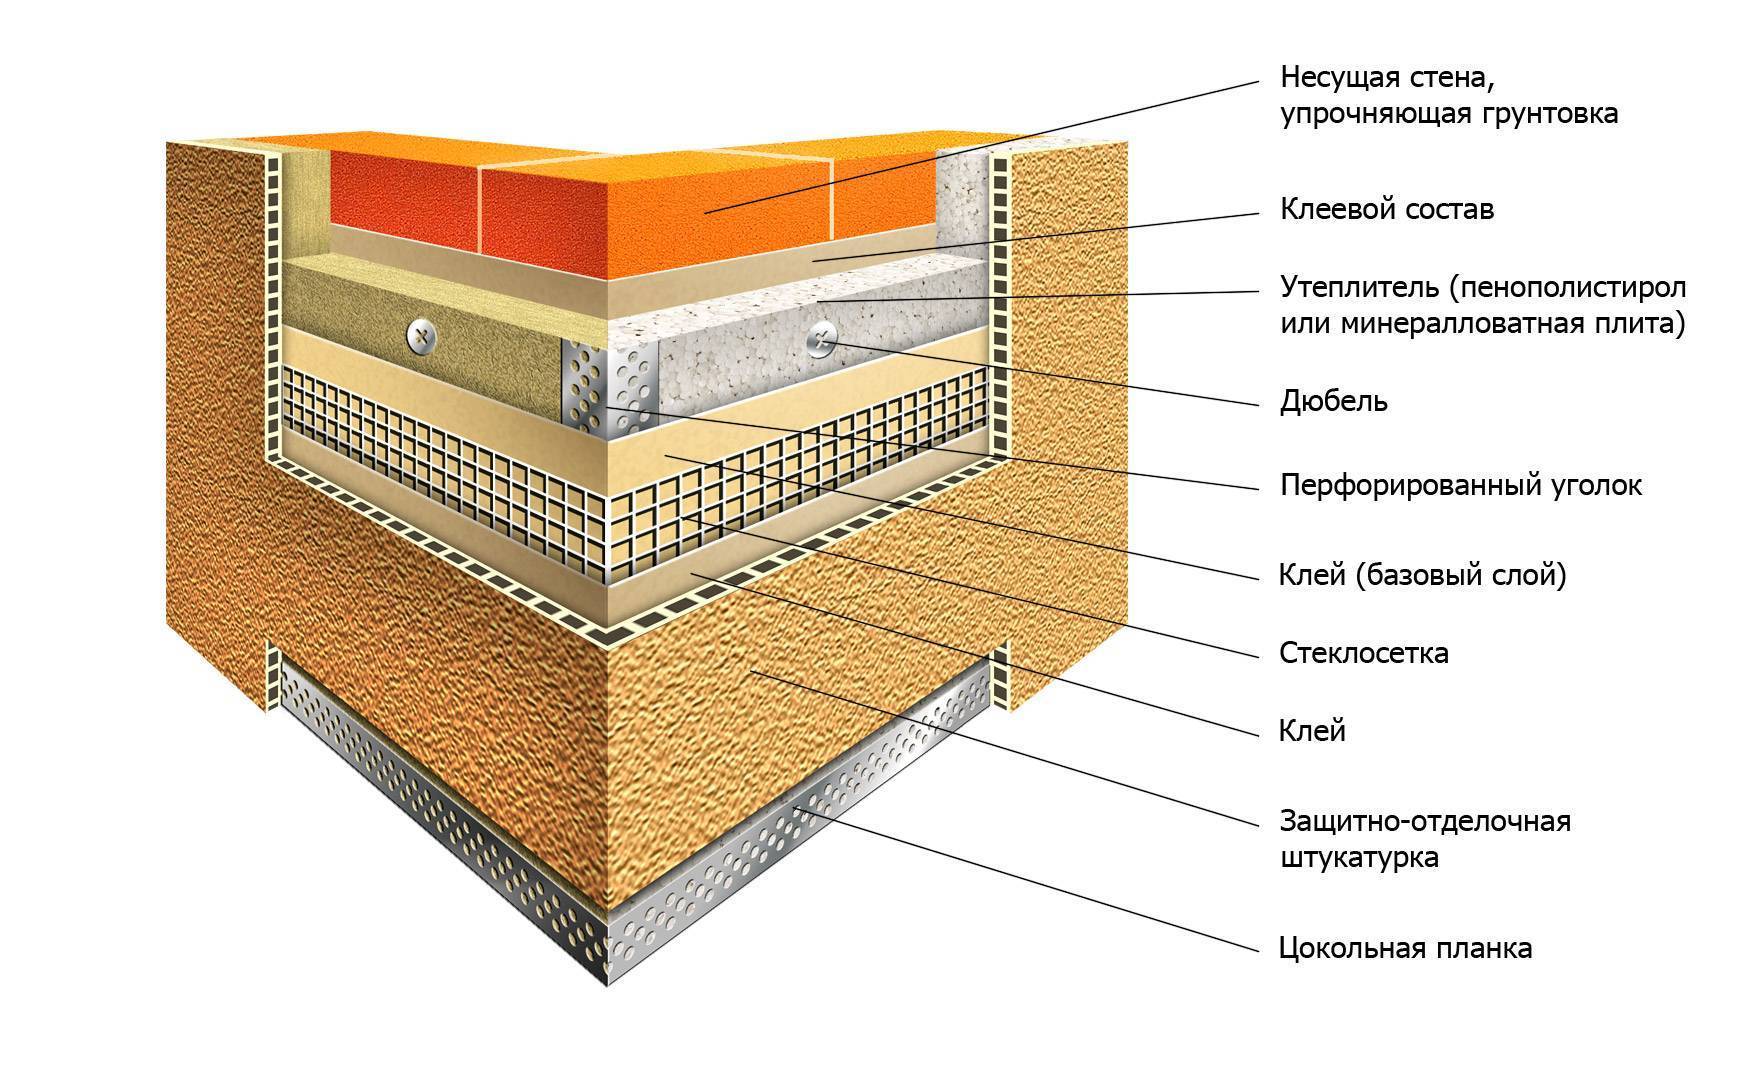 Пенопласт для утепления дома своими руками: плюсы и минусы, технология обшивки фасада и крыши здания